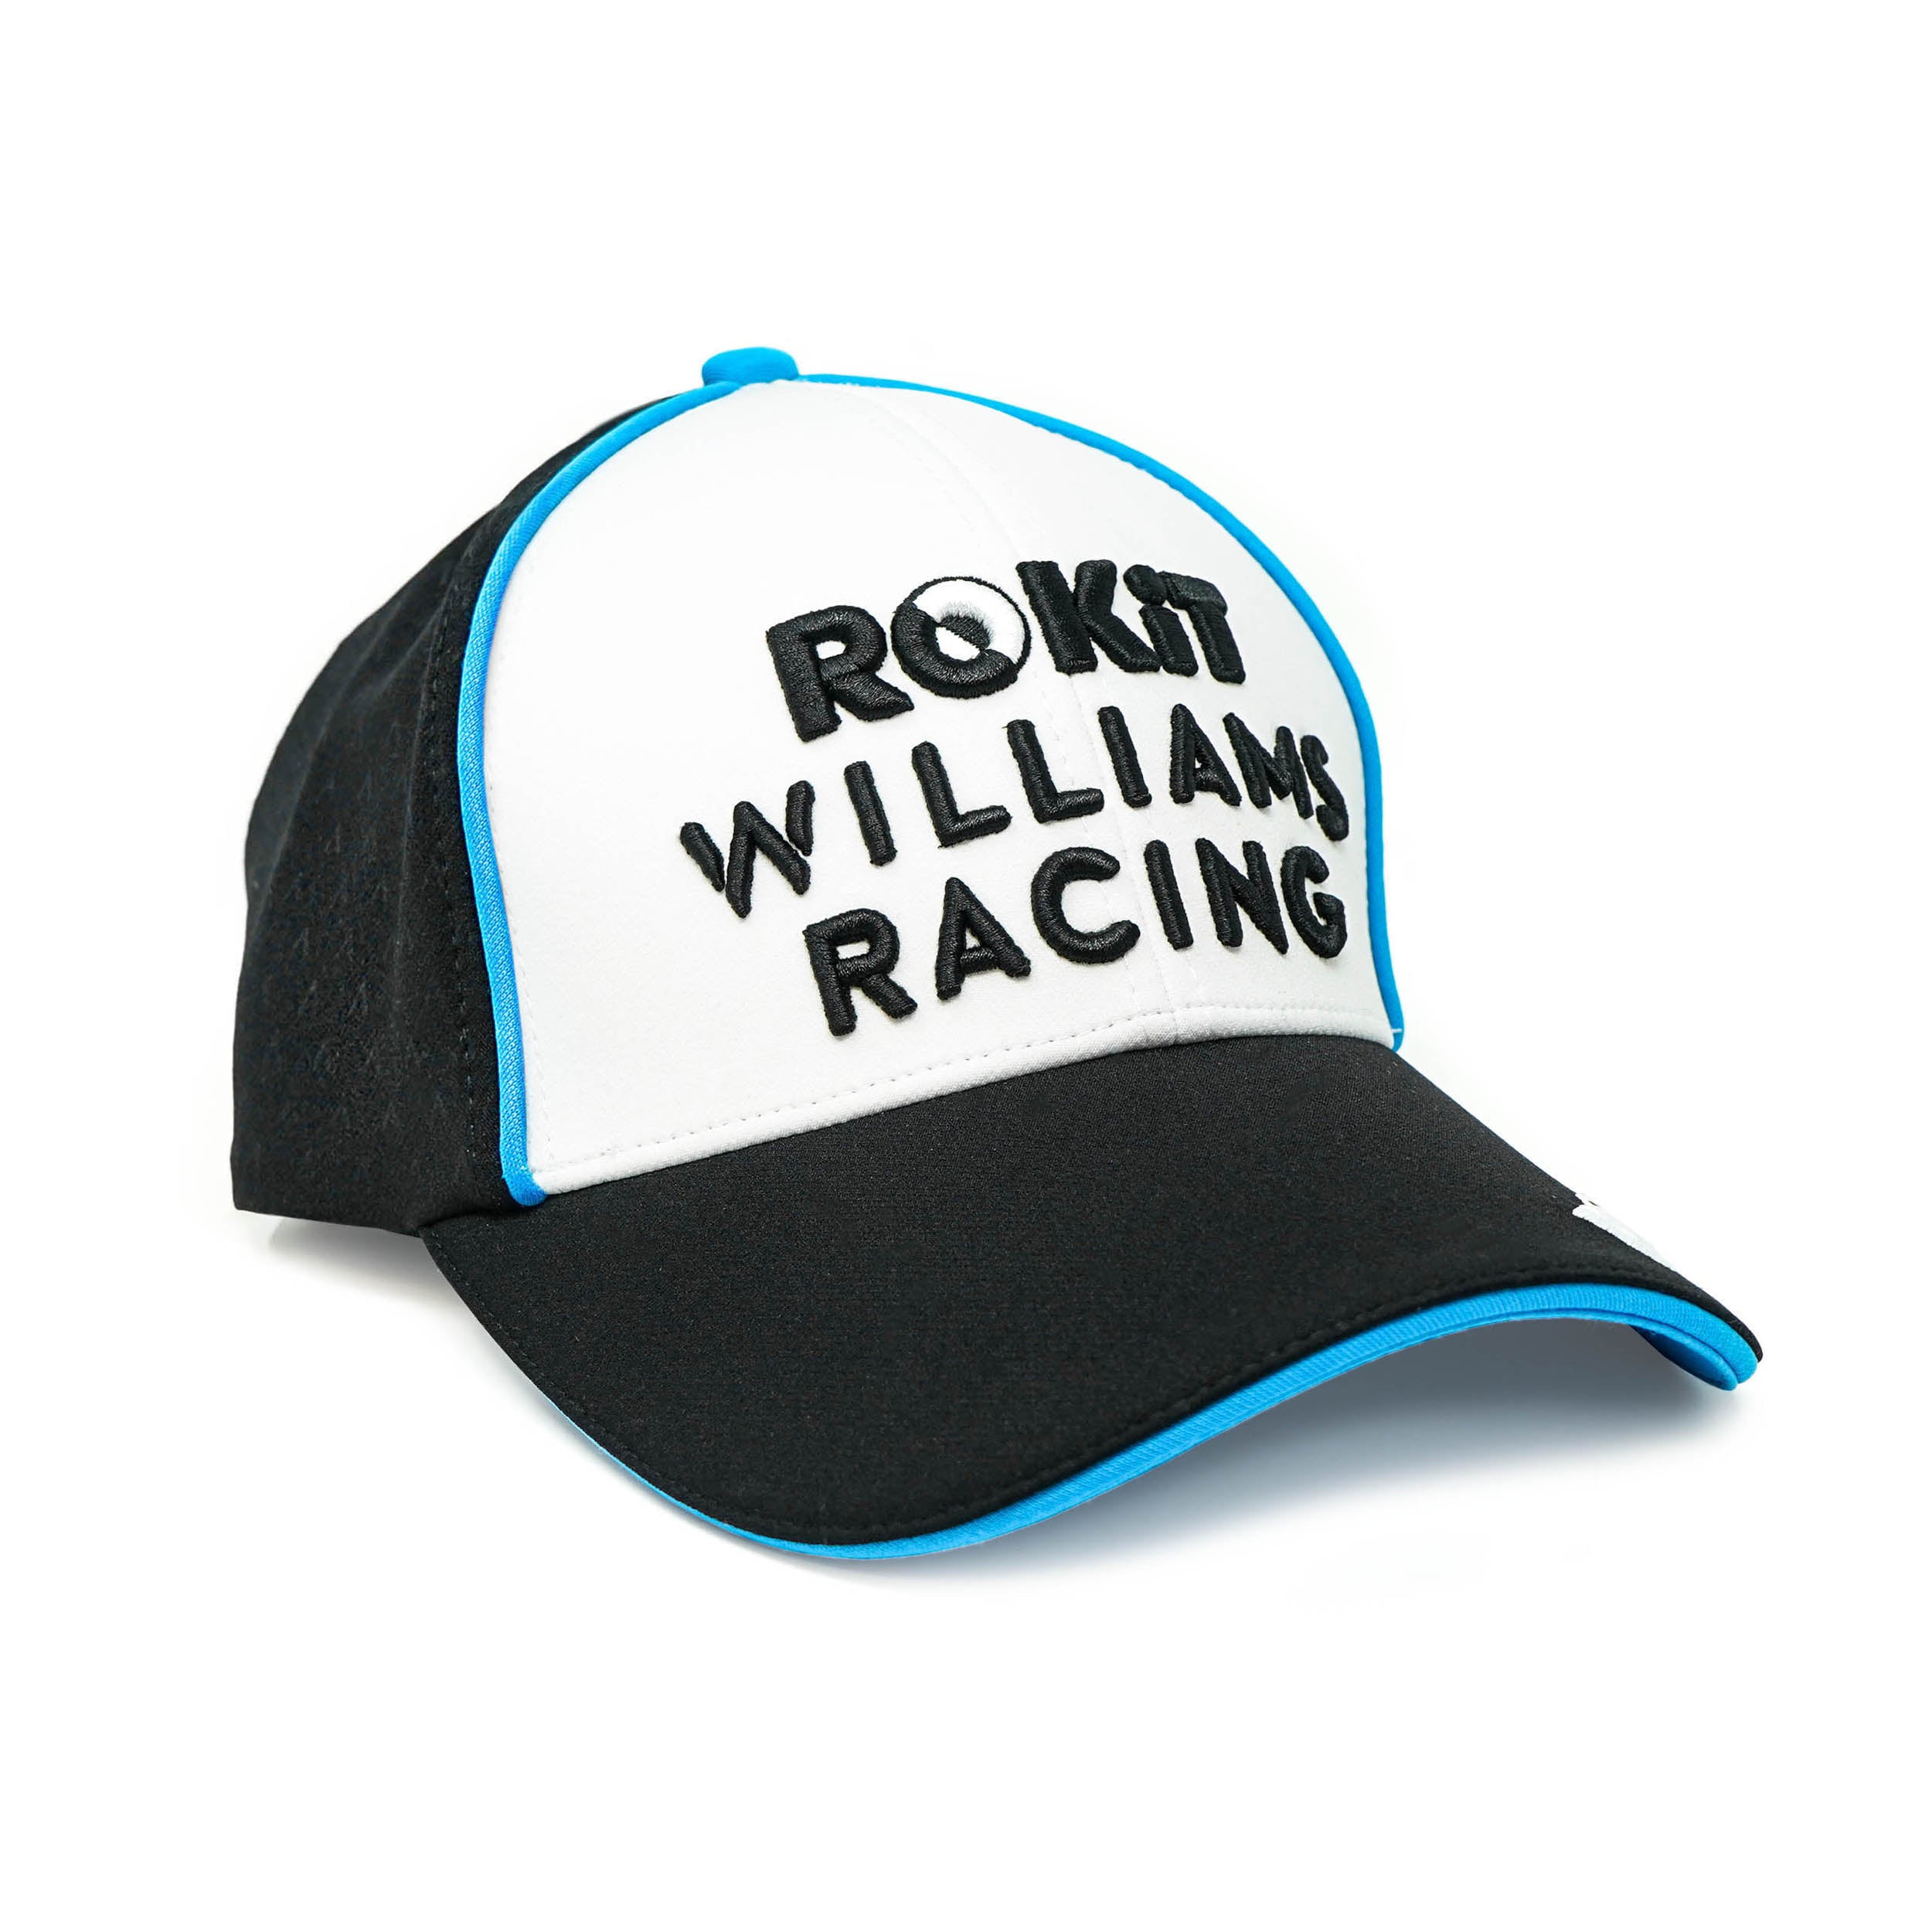 Williams Racing 2020 White Team Cap 